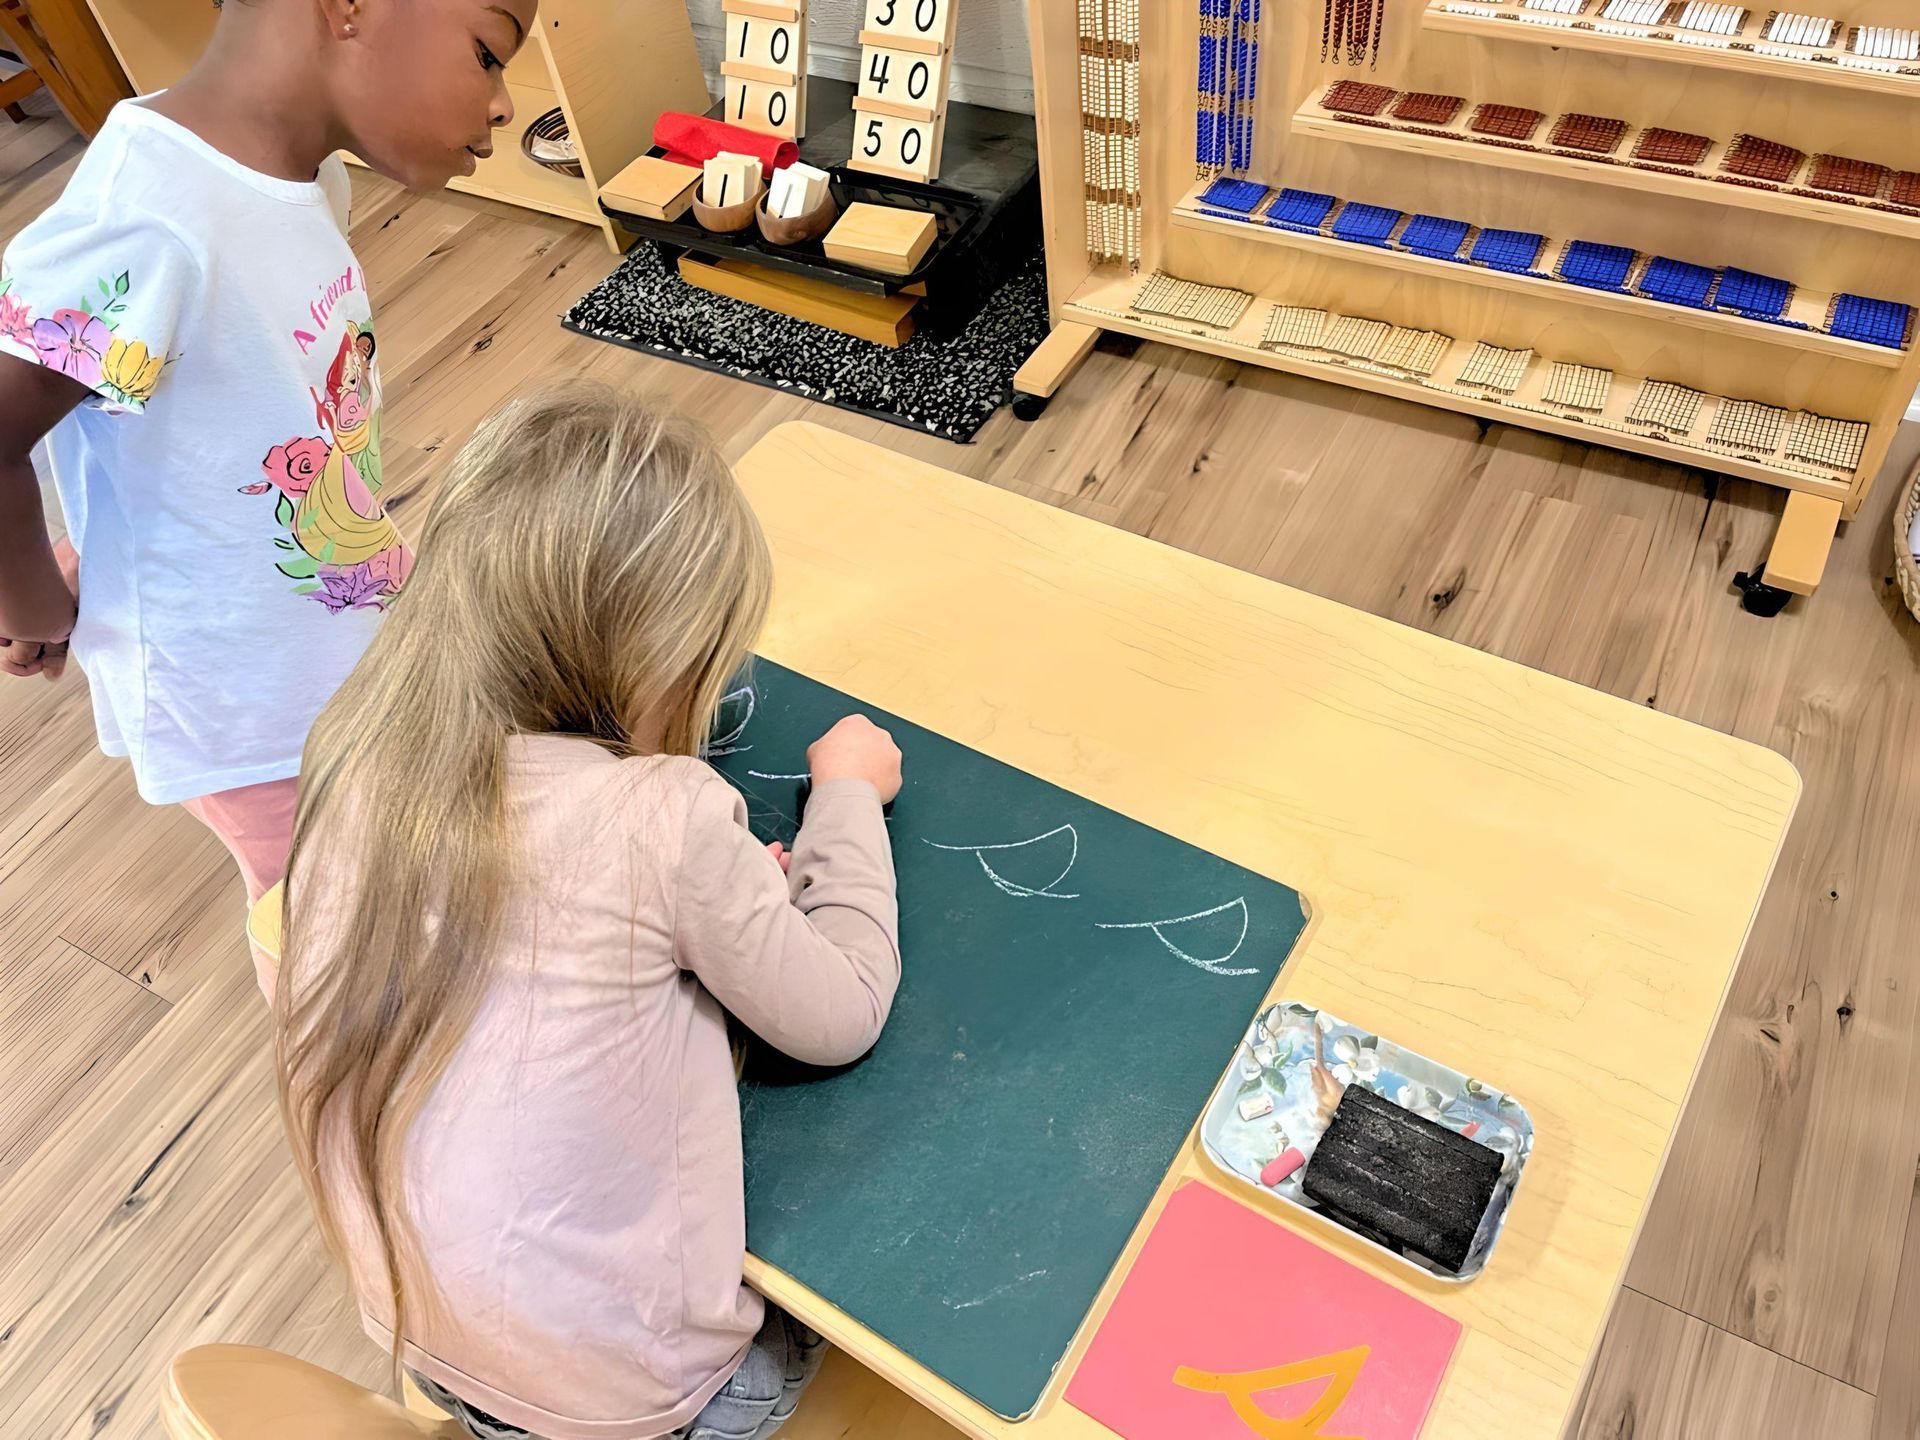 Child working with Montessori language materials